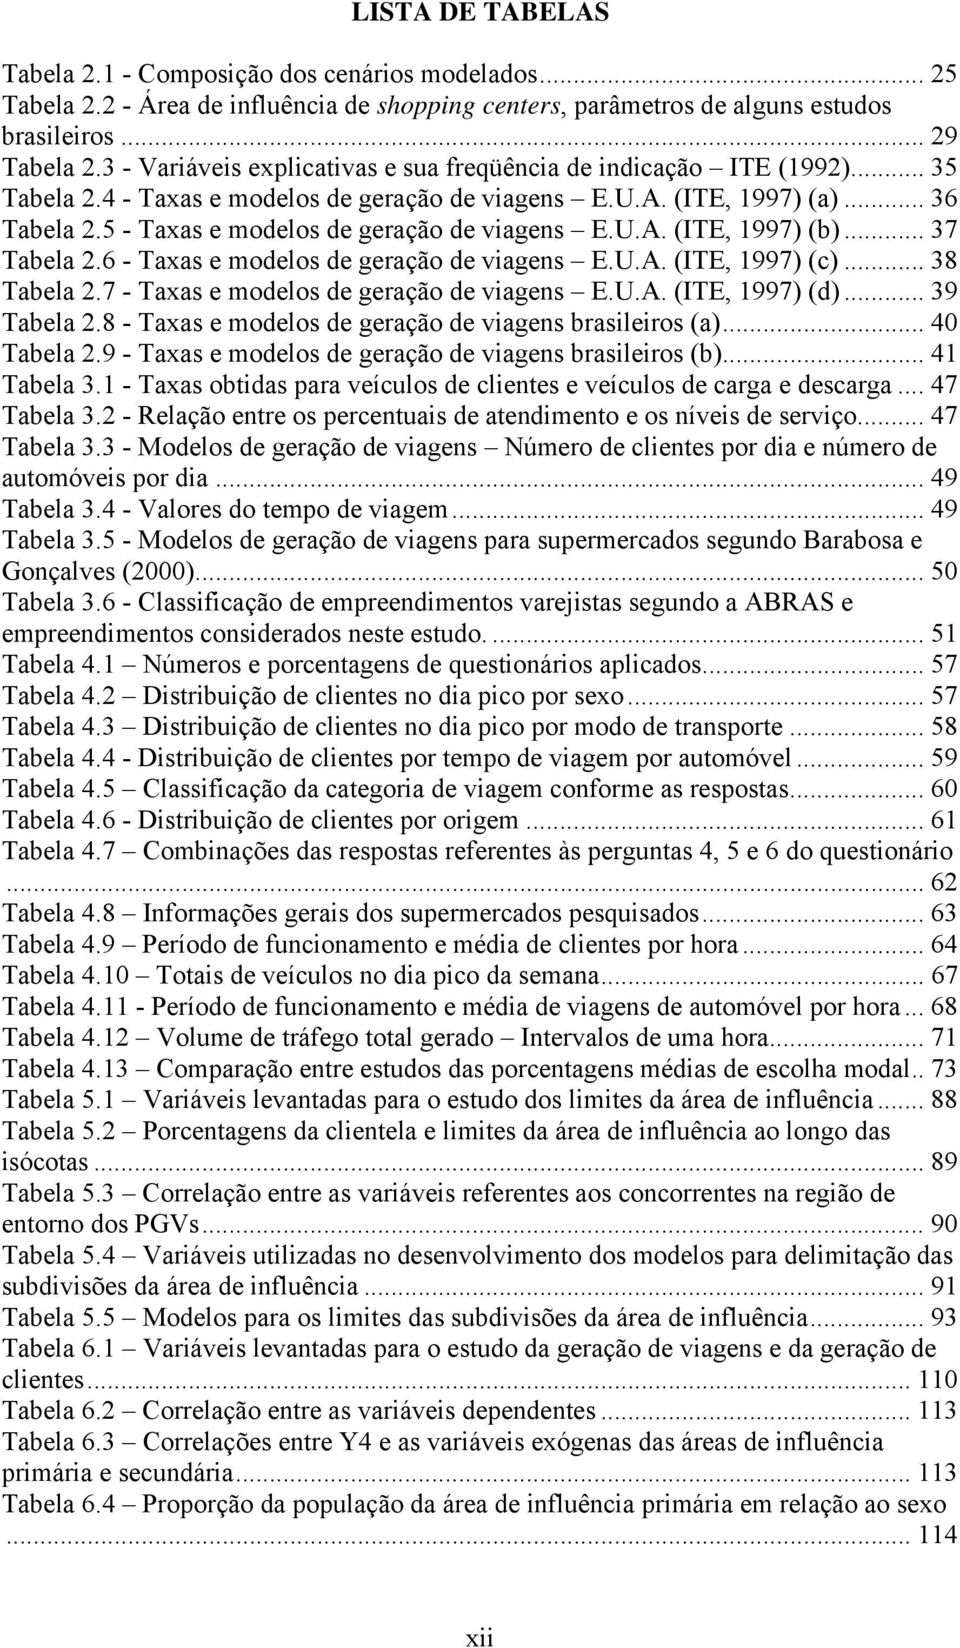 5 - Taxas e modelos de geração de viagens E.U.A. (ITE, 1997) (b)... 37 Tabela 2.6 - Taxas e modelos de geração de viagens E.U.A. (ITE, 1997) (c)... 38 Tabela 2.